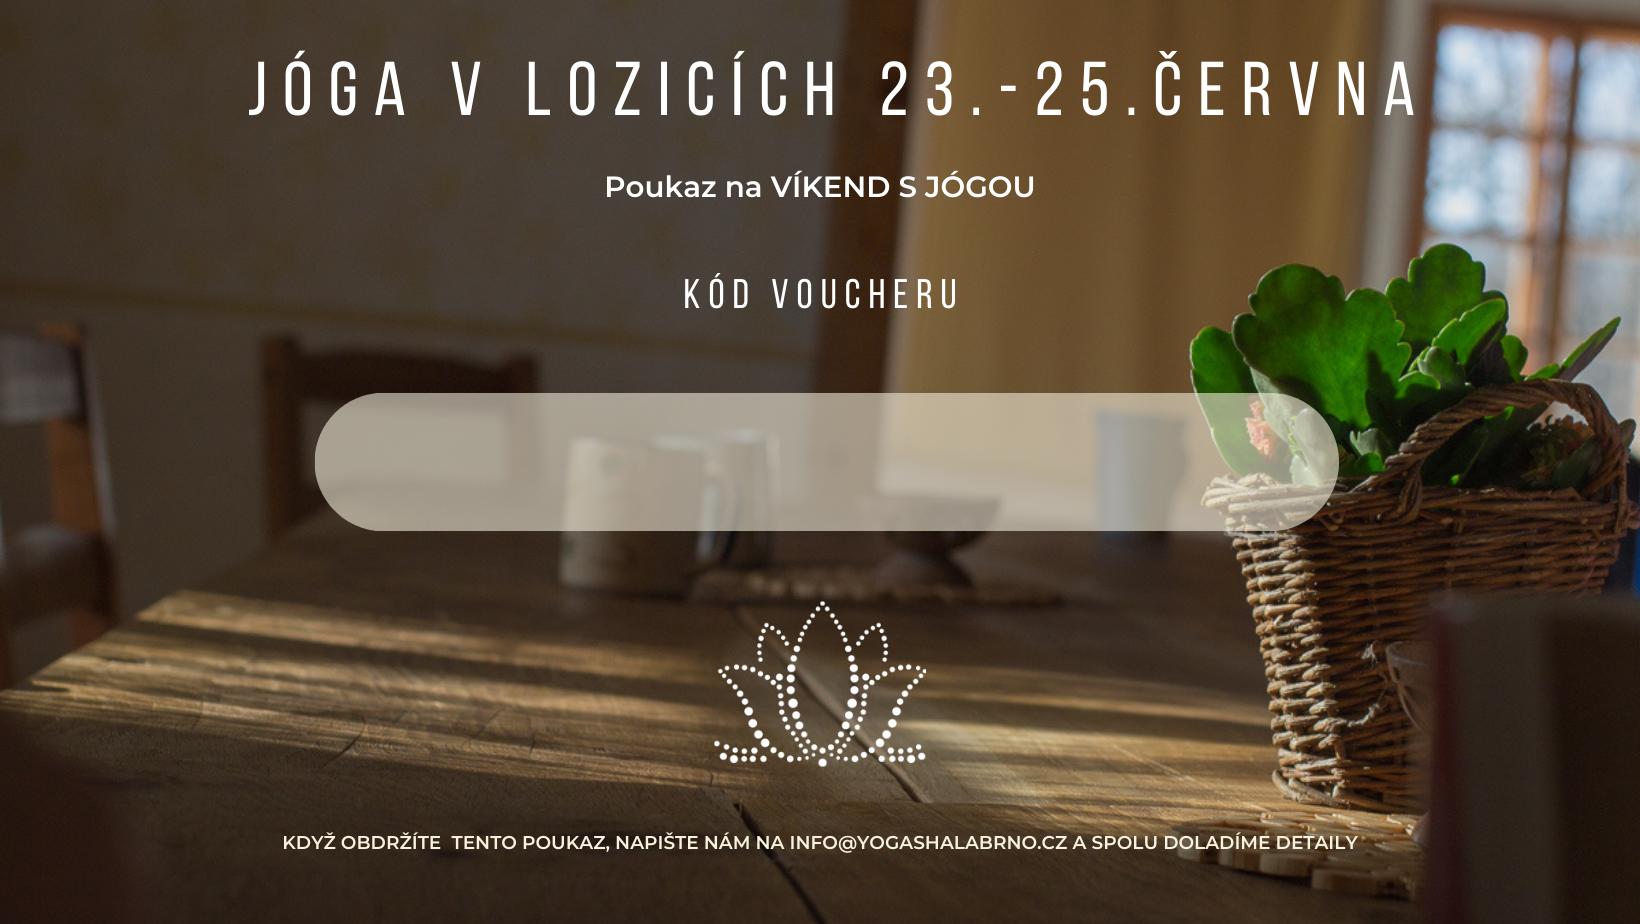 Voucher VÍKEND V LOZICÍCH 23.-25.06.